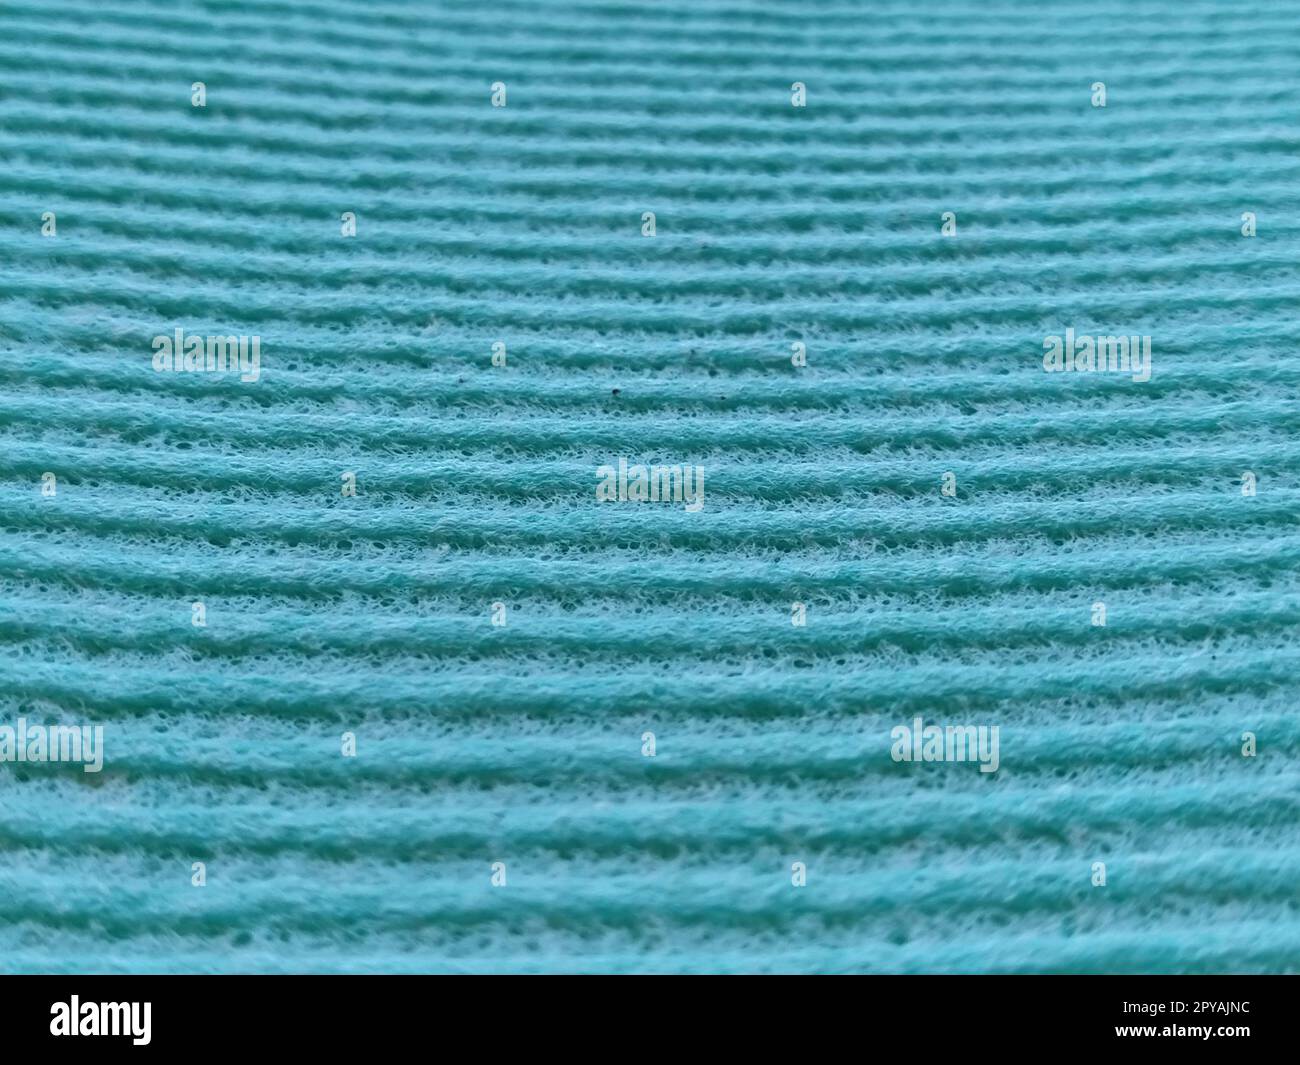 Ein grüner oder aquatisch gerippter Streifen. Geschirrspülschwamm oder Mikrofasertuch – Nahaufnahme. Weichzeichner Stockfoto